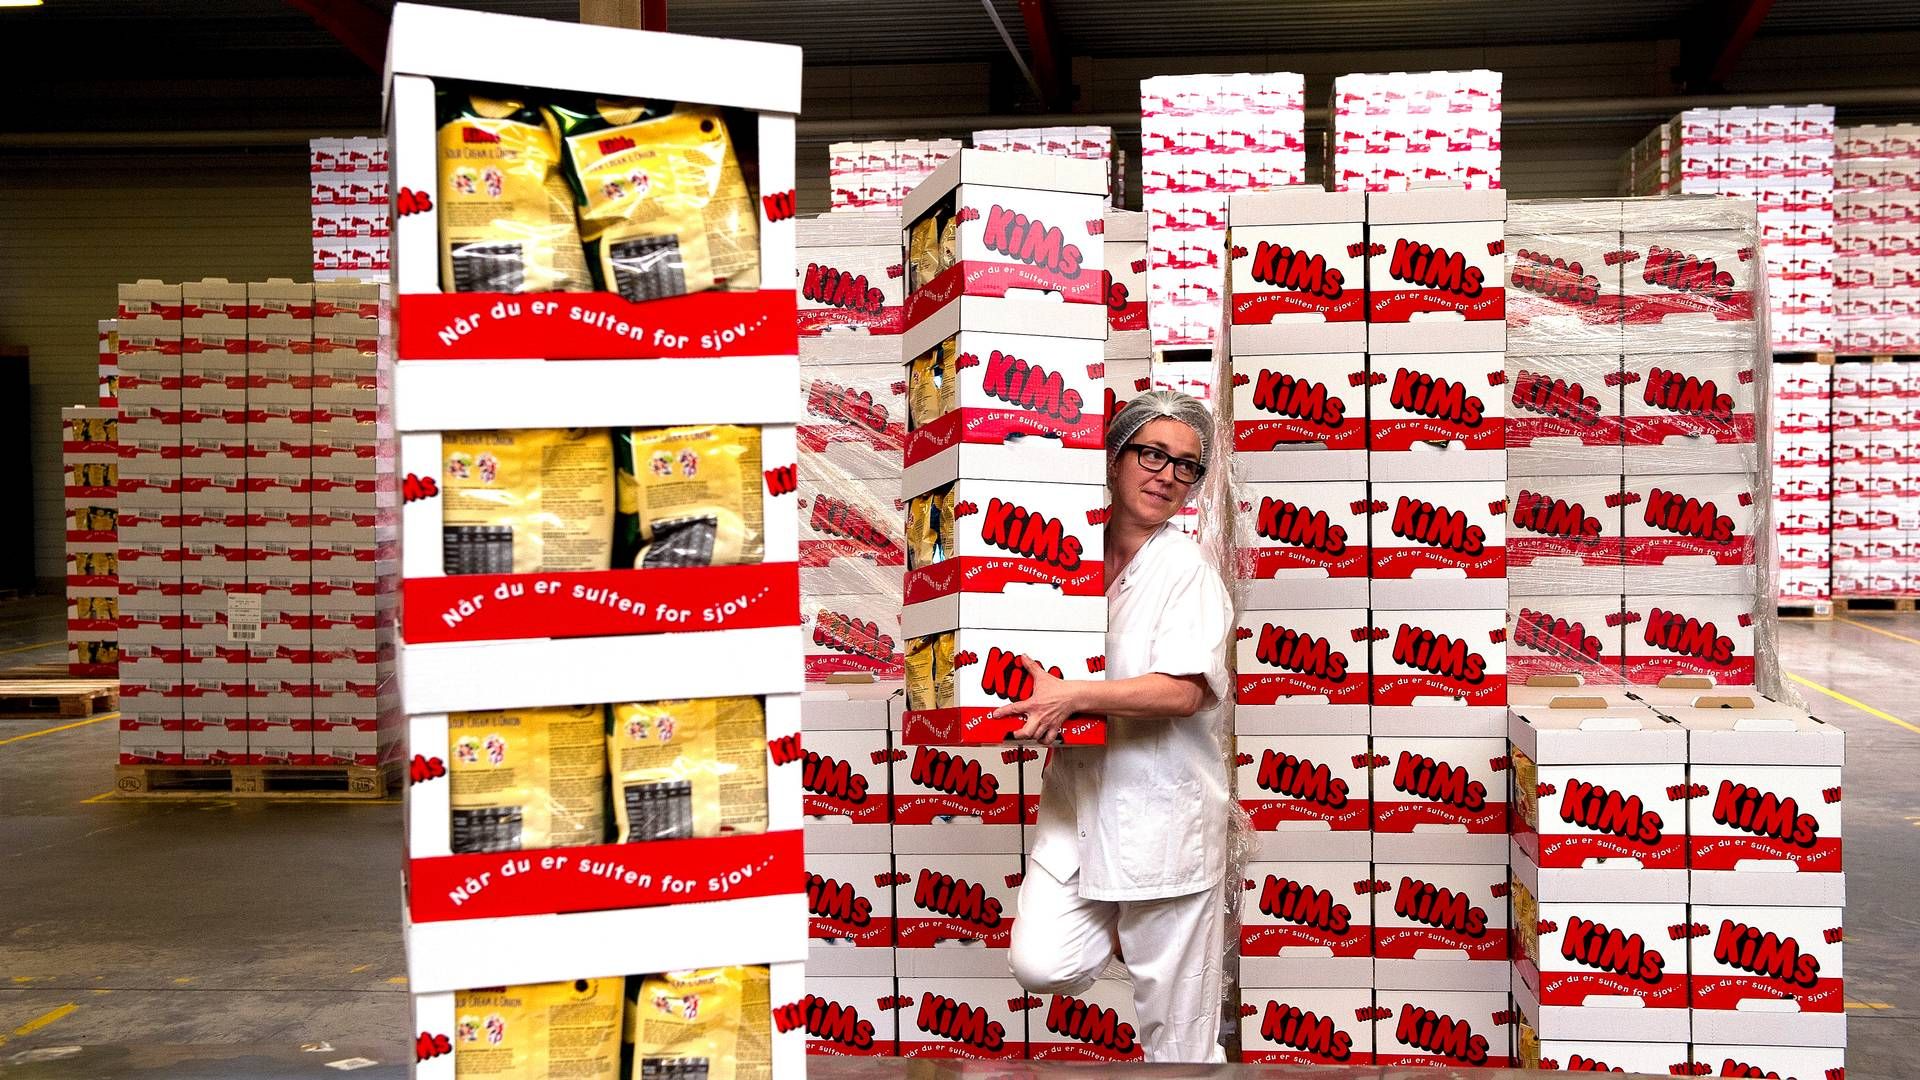 Forbrugerne har ikke straffet chipsproducenten efter kritik kampagnen Kims Chips Battle, lyder det fra adm. direktør Carsten Hãnel. | Foto: Carsten Andreasen